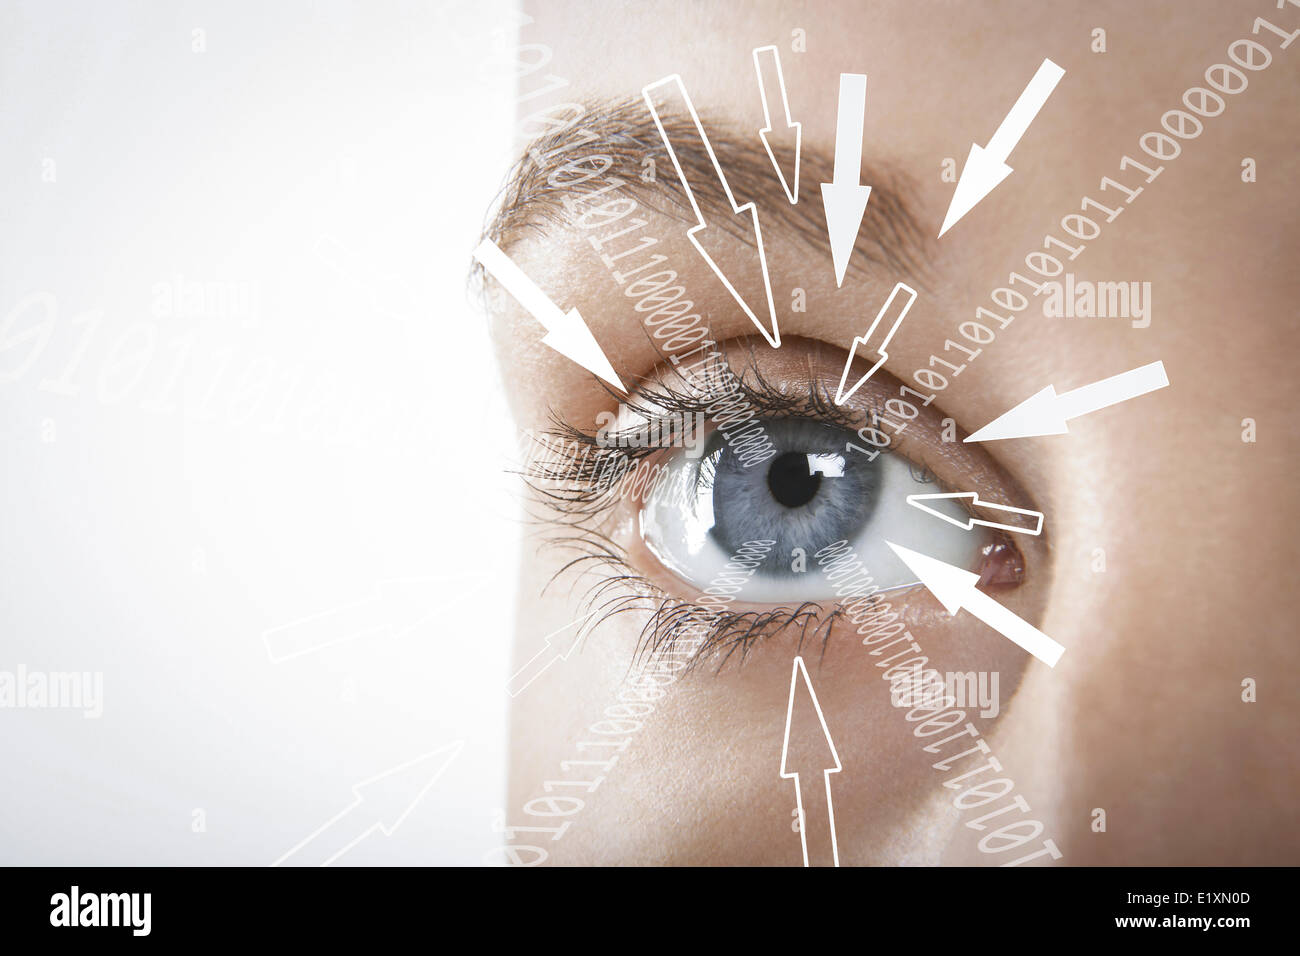 Immagine ritagliata di imprenditrice con cifre binarie e segni freccia verso il suo occhio contro uno sfondo bianco Foto Stock